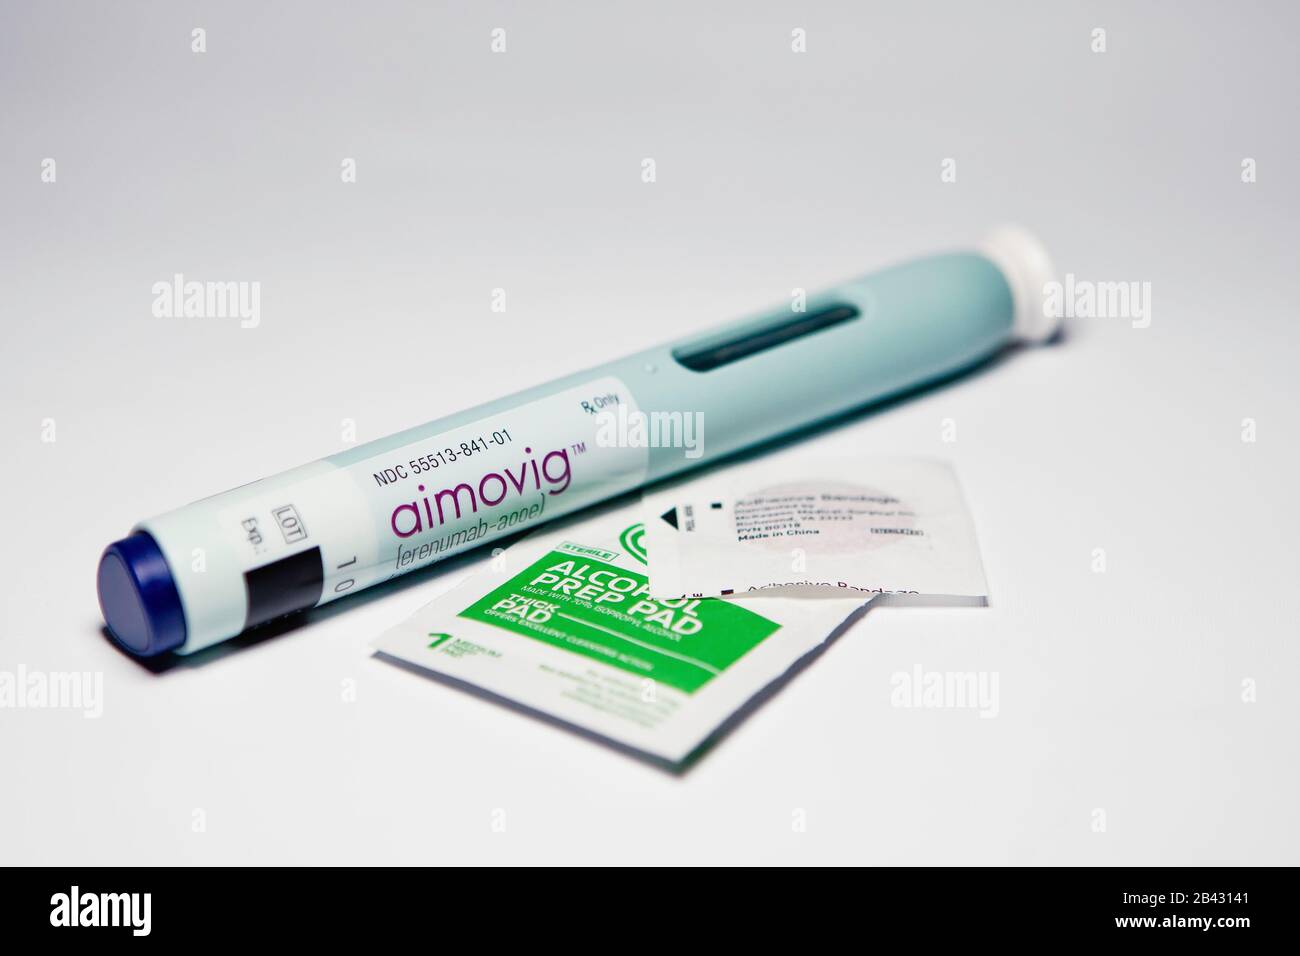 Aimovig (erenumab-aooe) 70 mg auto-injector device, prescription drug migraine prevention, alcohol wipe, spot bandage, studio, color, United States Stock Photo